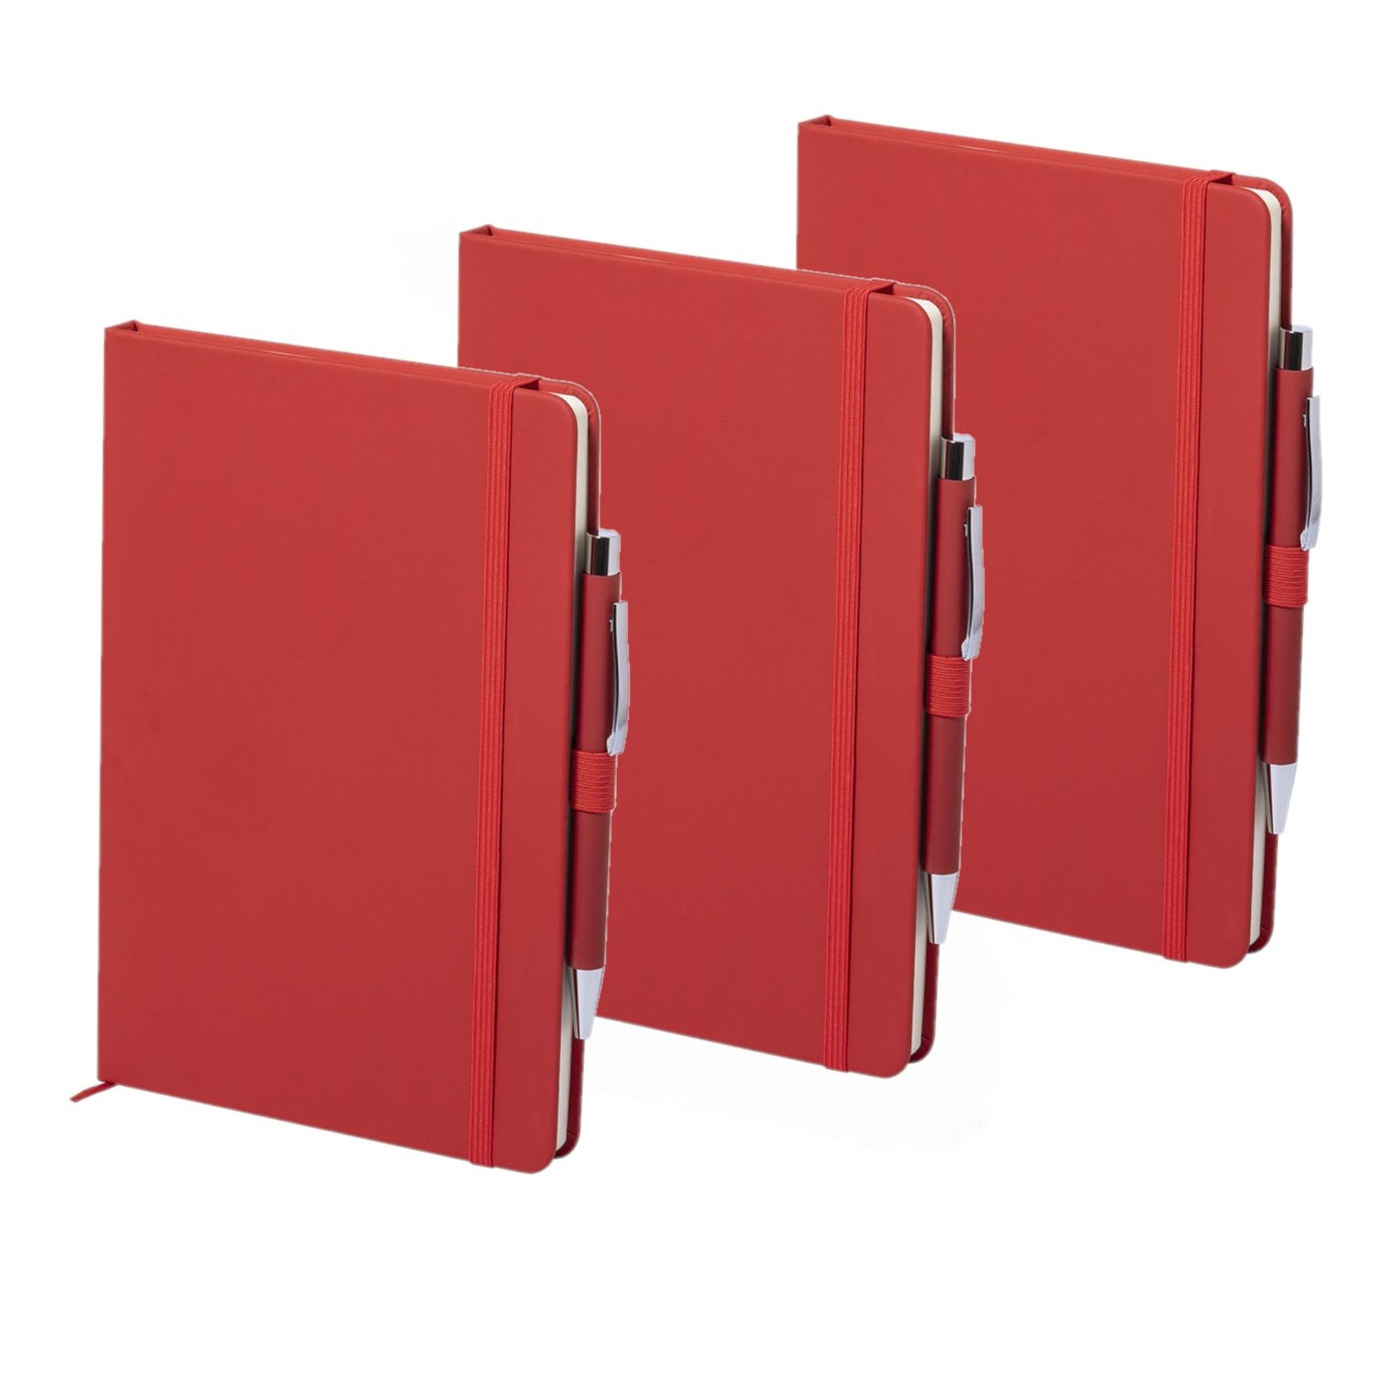 Set van 5x stuks luxe notitieboekje gelinieerd rood met elastiek en pen A5 formaat